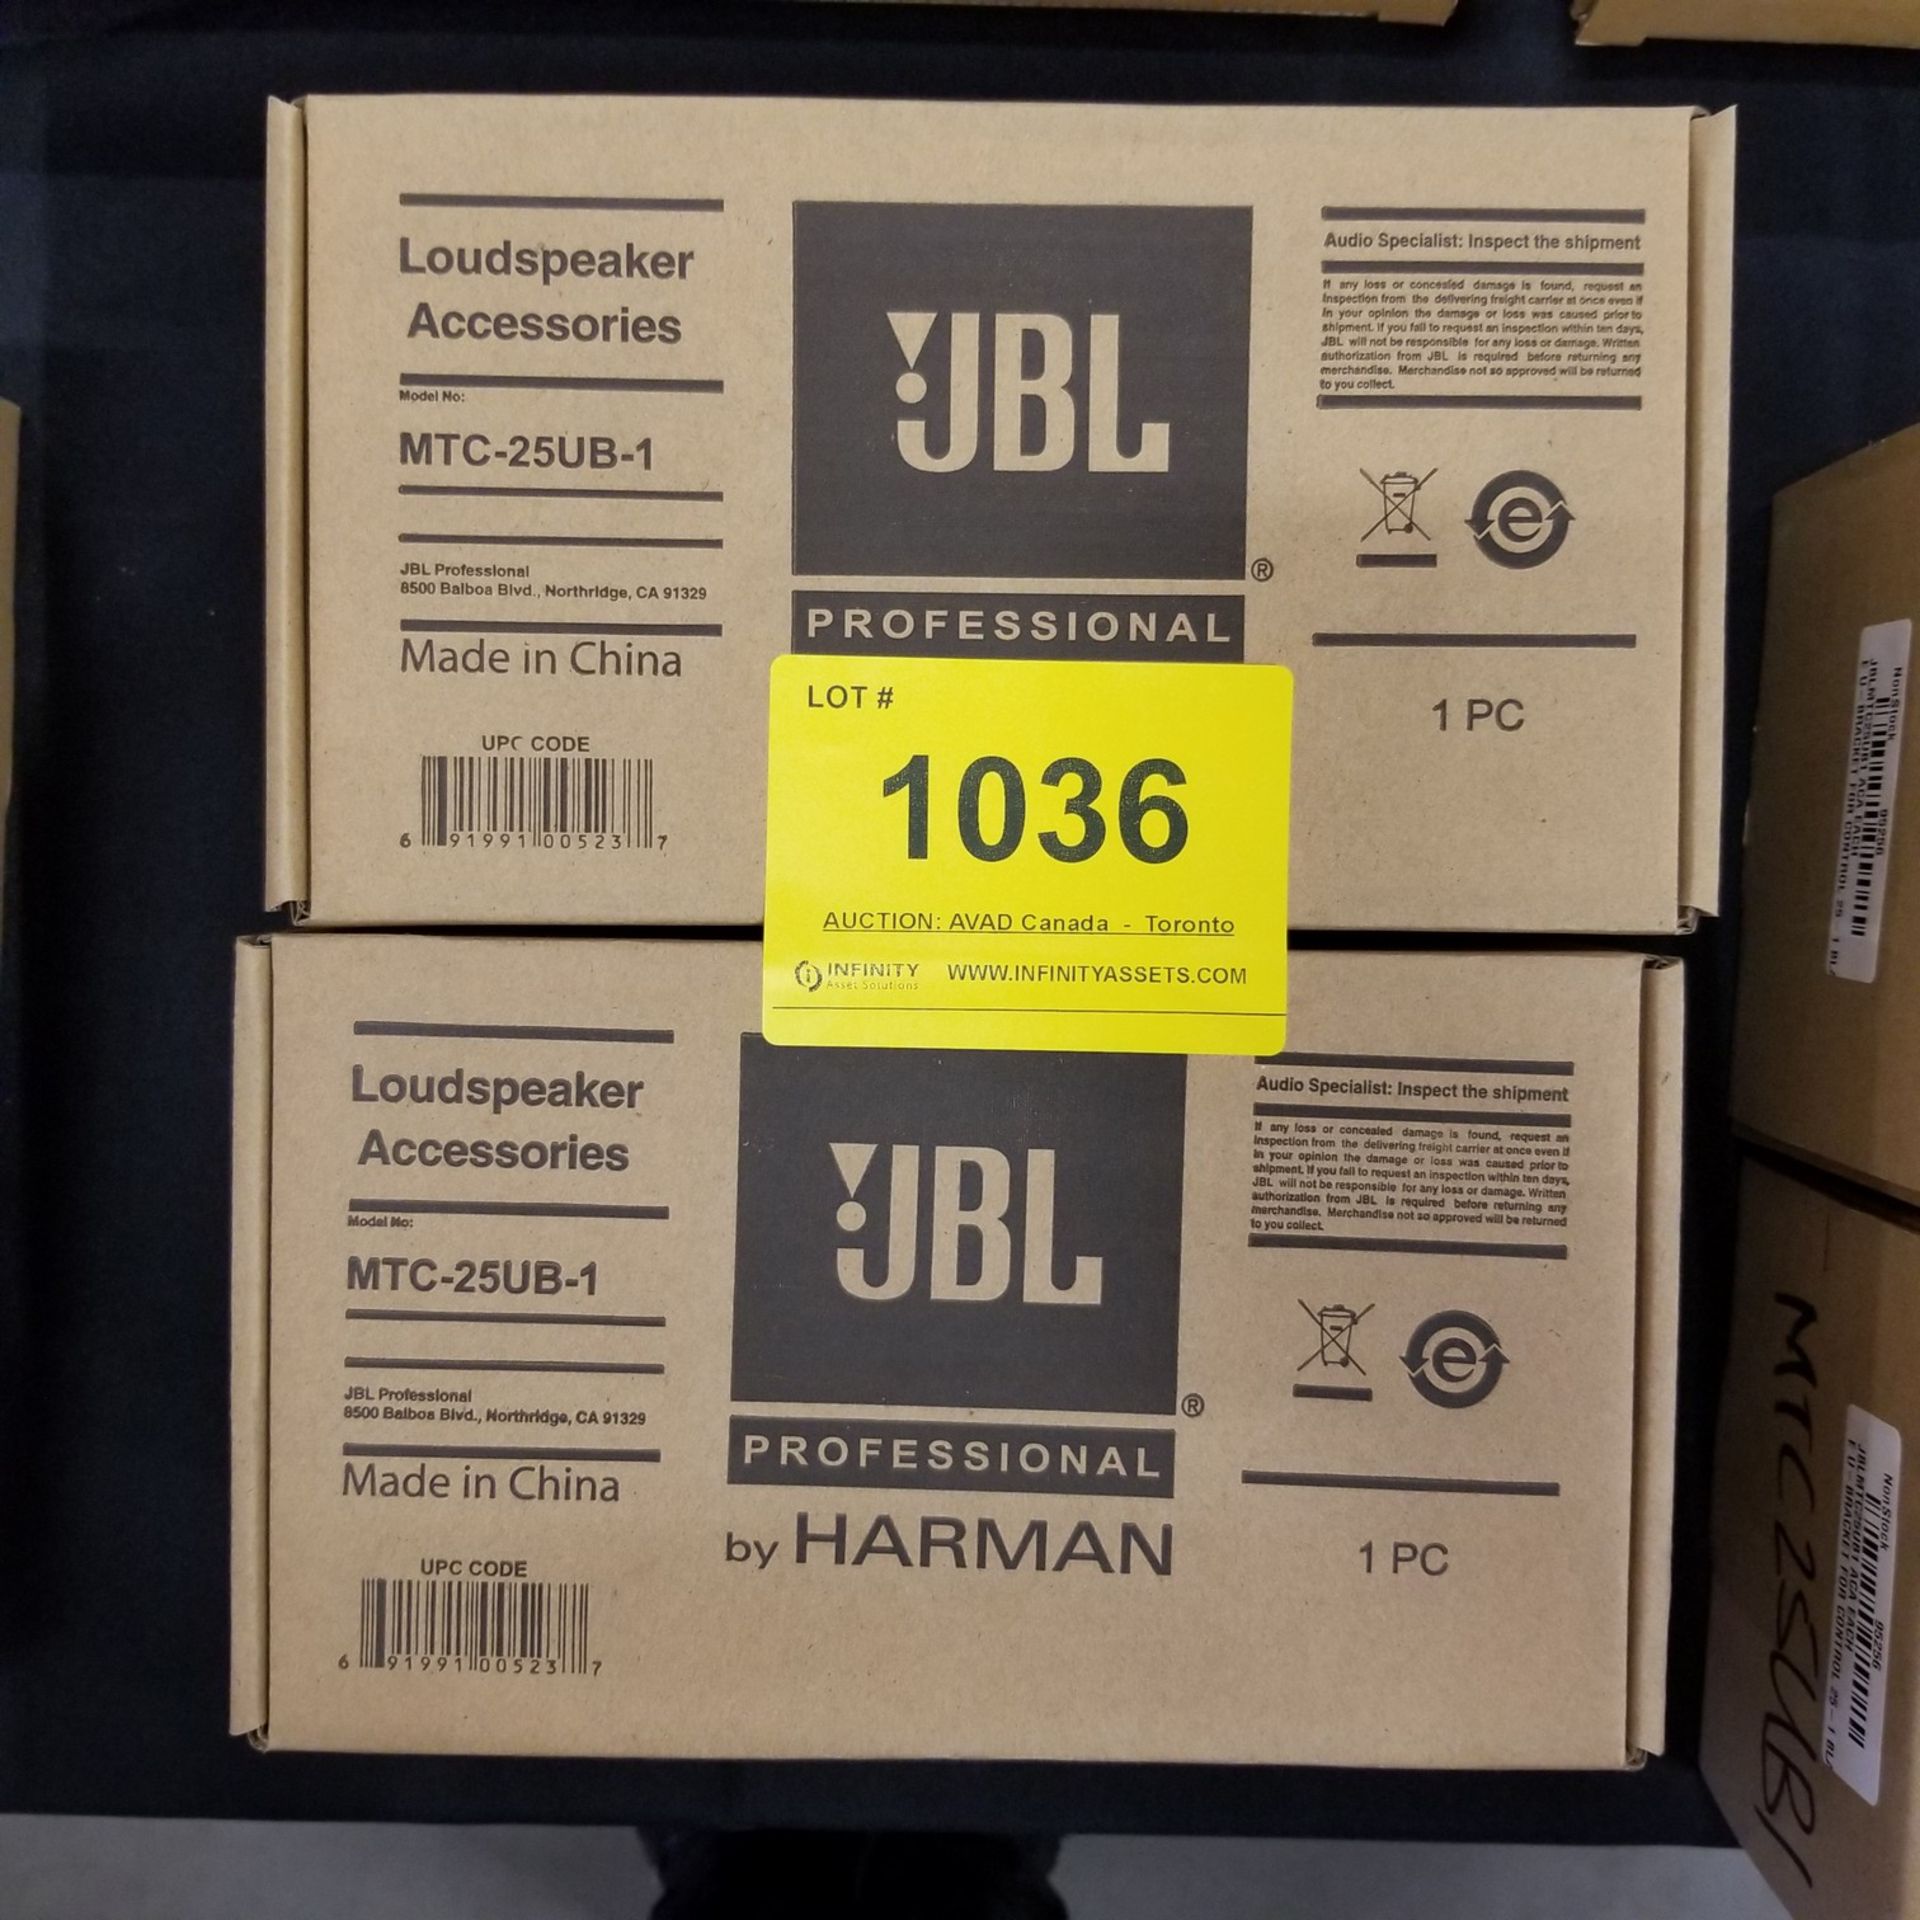 JBL, MTC-25UB-1 LOUDSPEAKER ACCESSORIES - (BNIB)